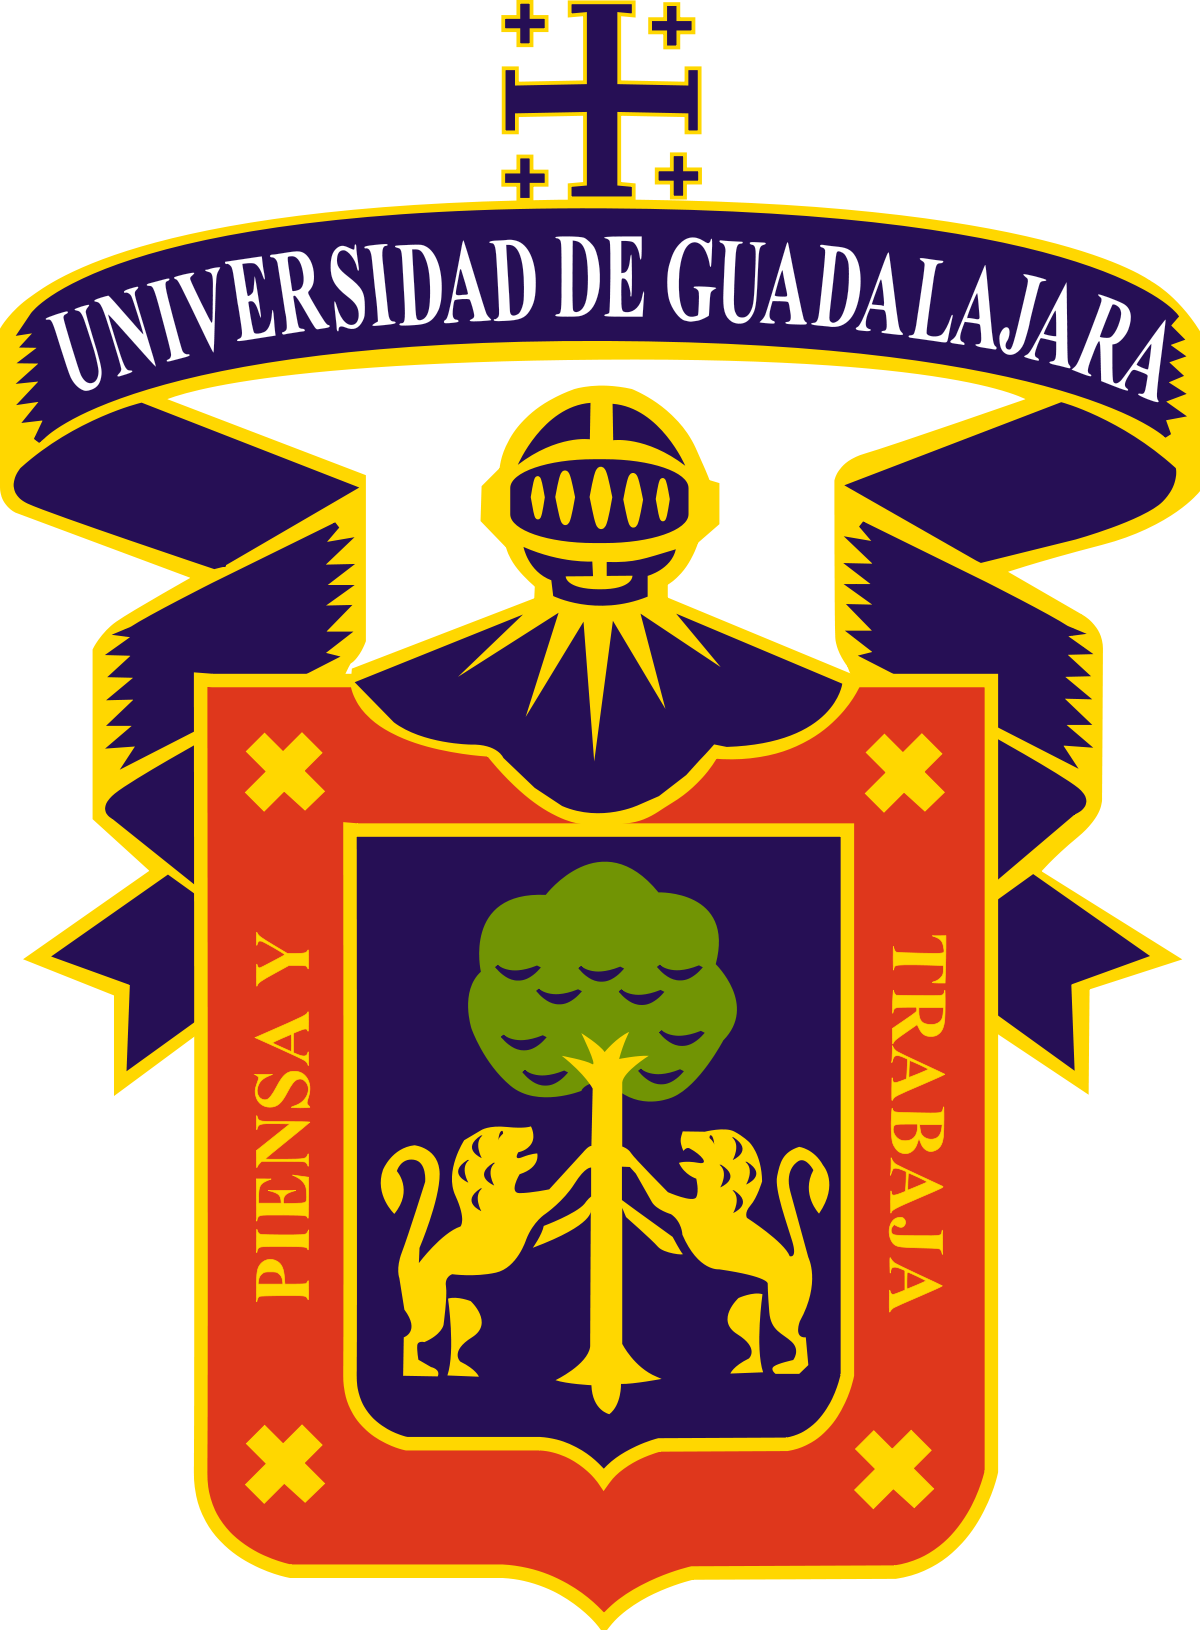 University of Guadalajara logo